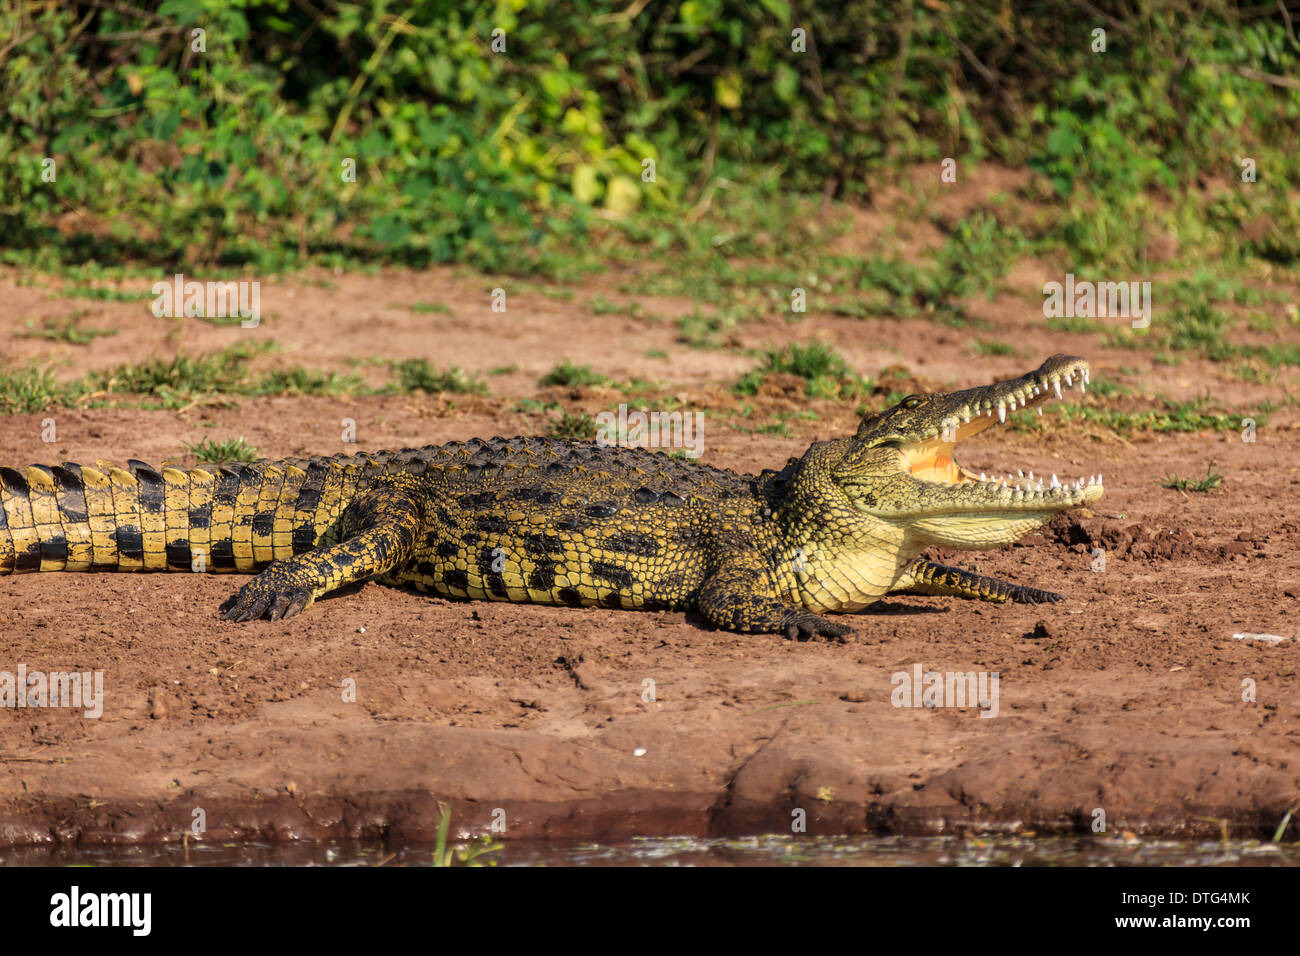 Crocodile bares i suoi denti in ampia apertura ganasce accanto al fiume in Botswana Foto Stock